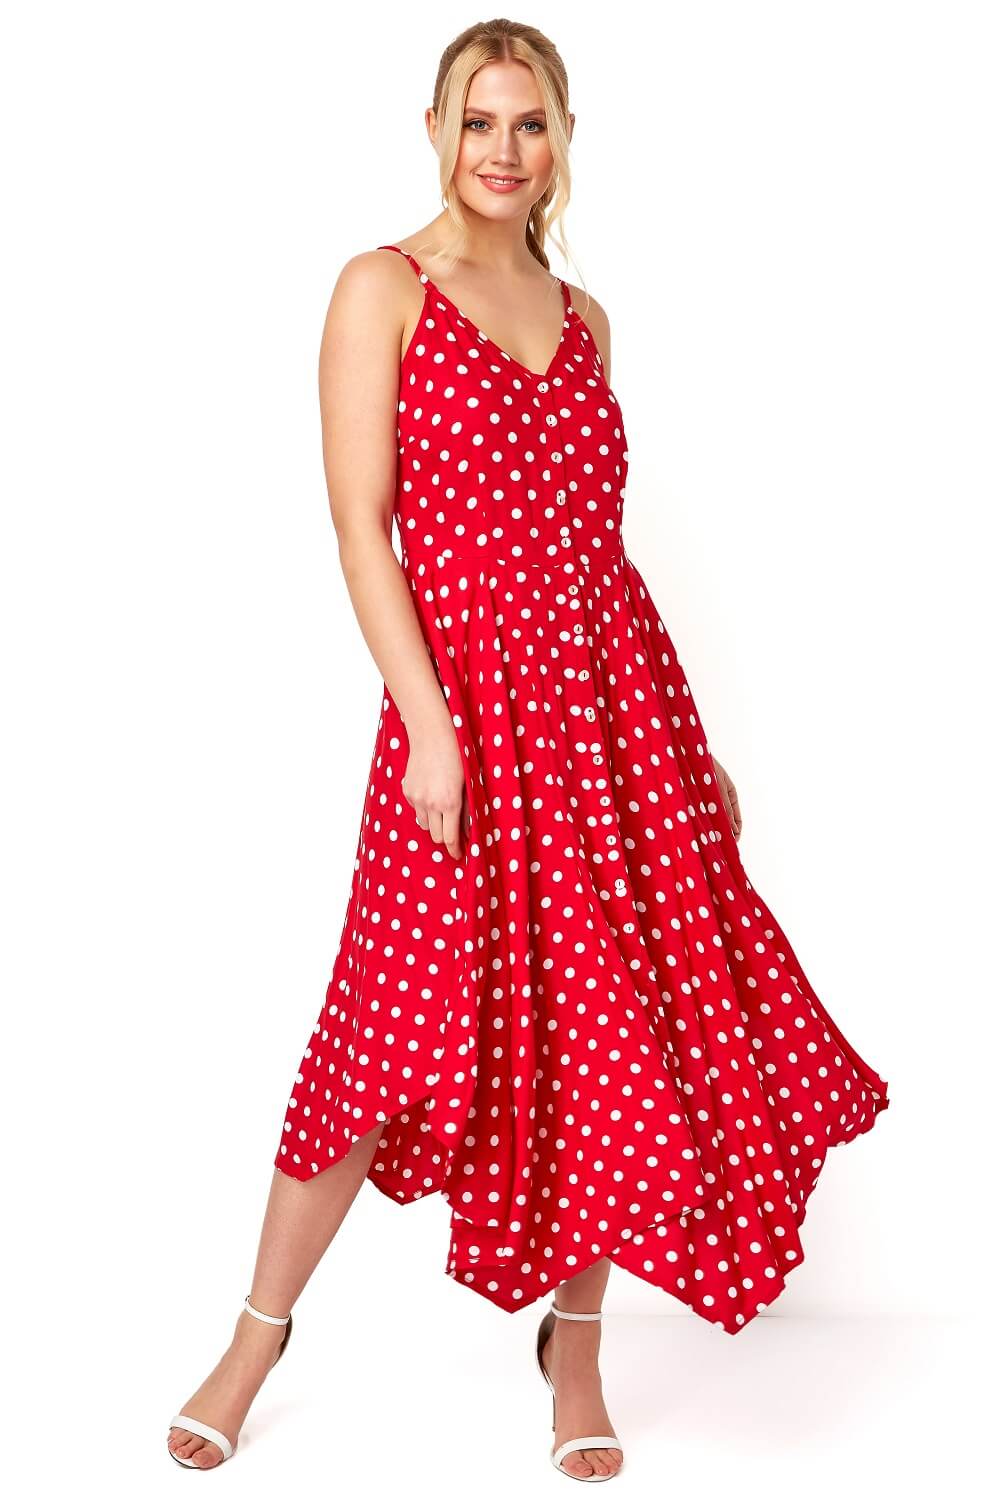 red spotty dress uk